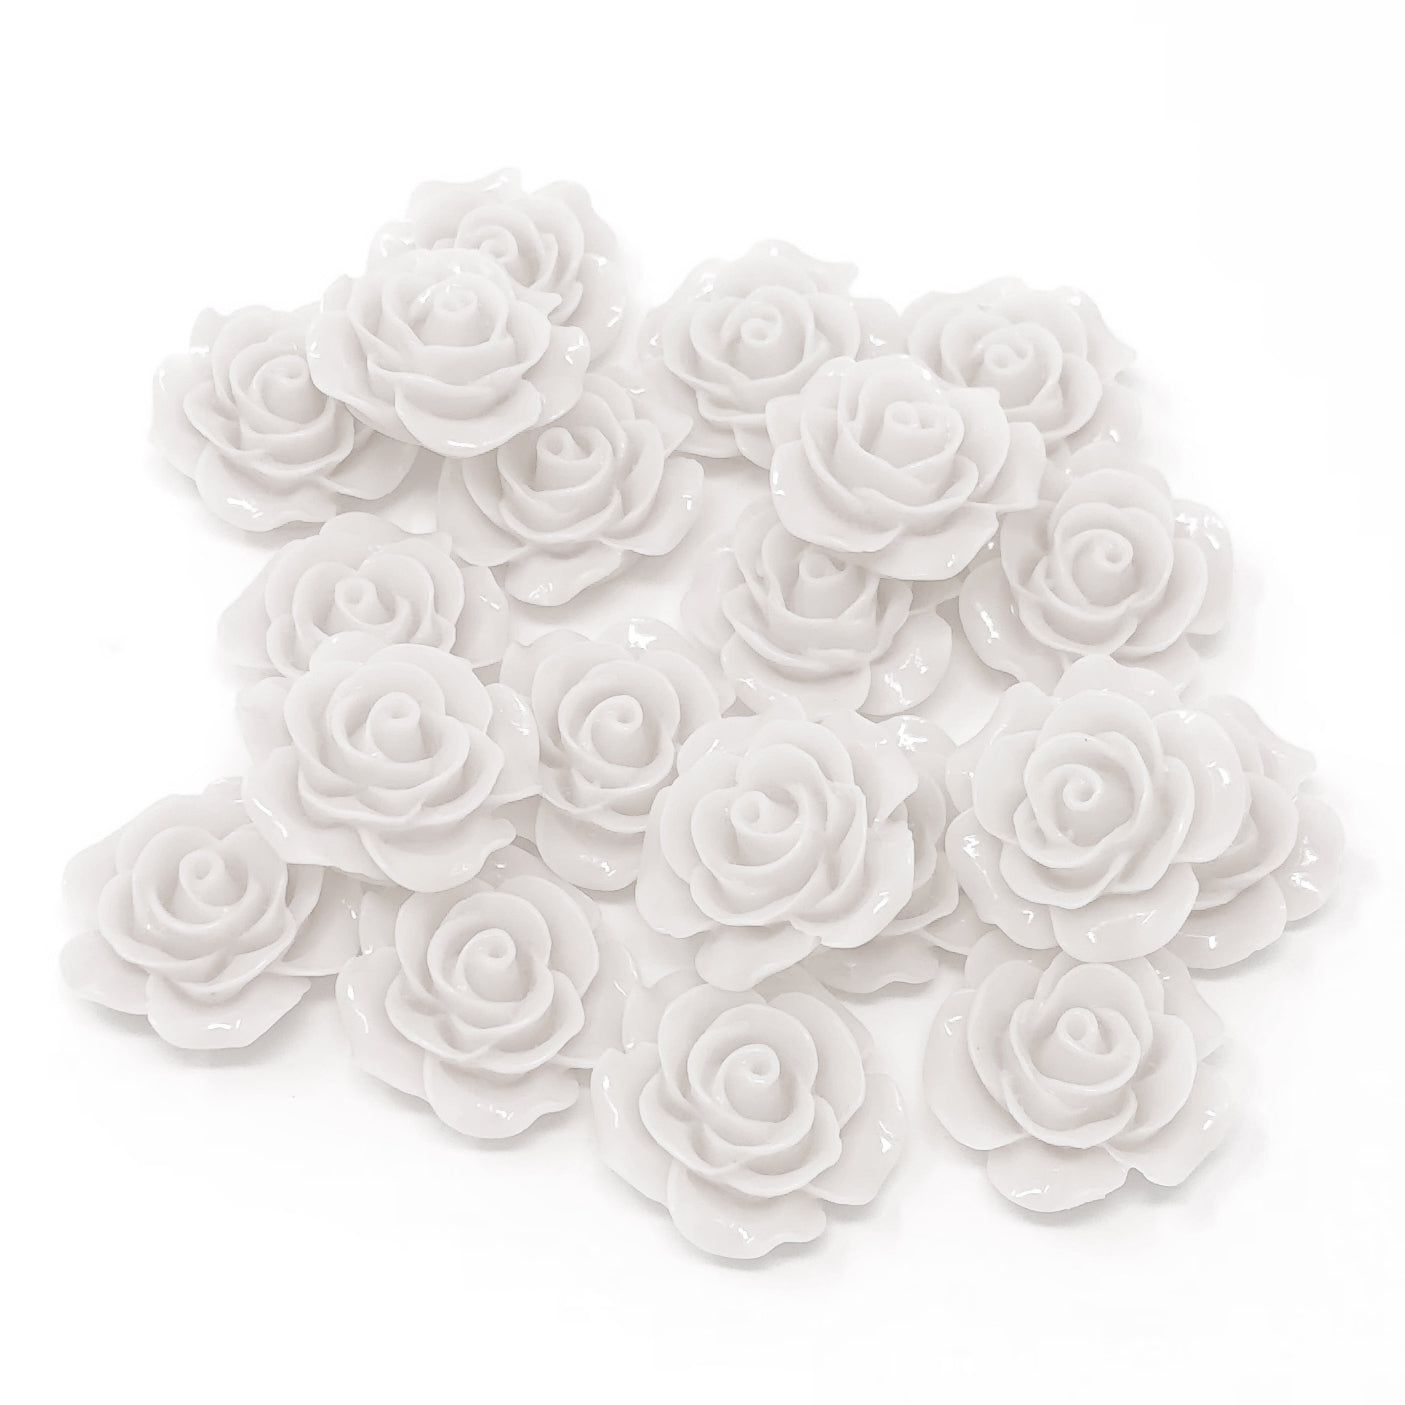 White 20mm Resin Roses Flatbacks - Pack of 20